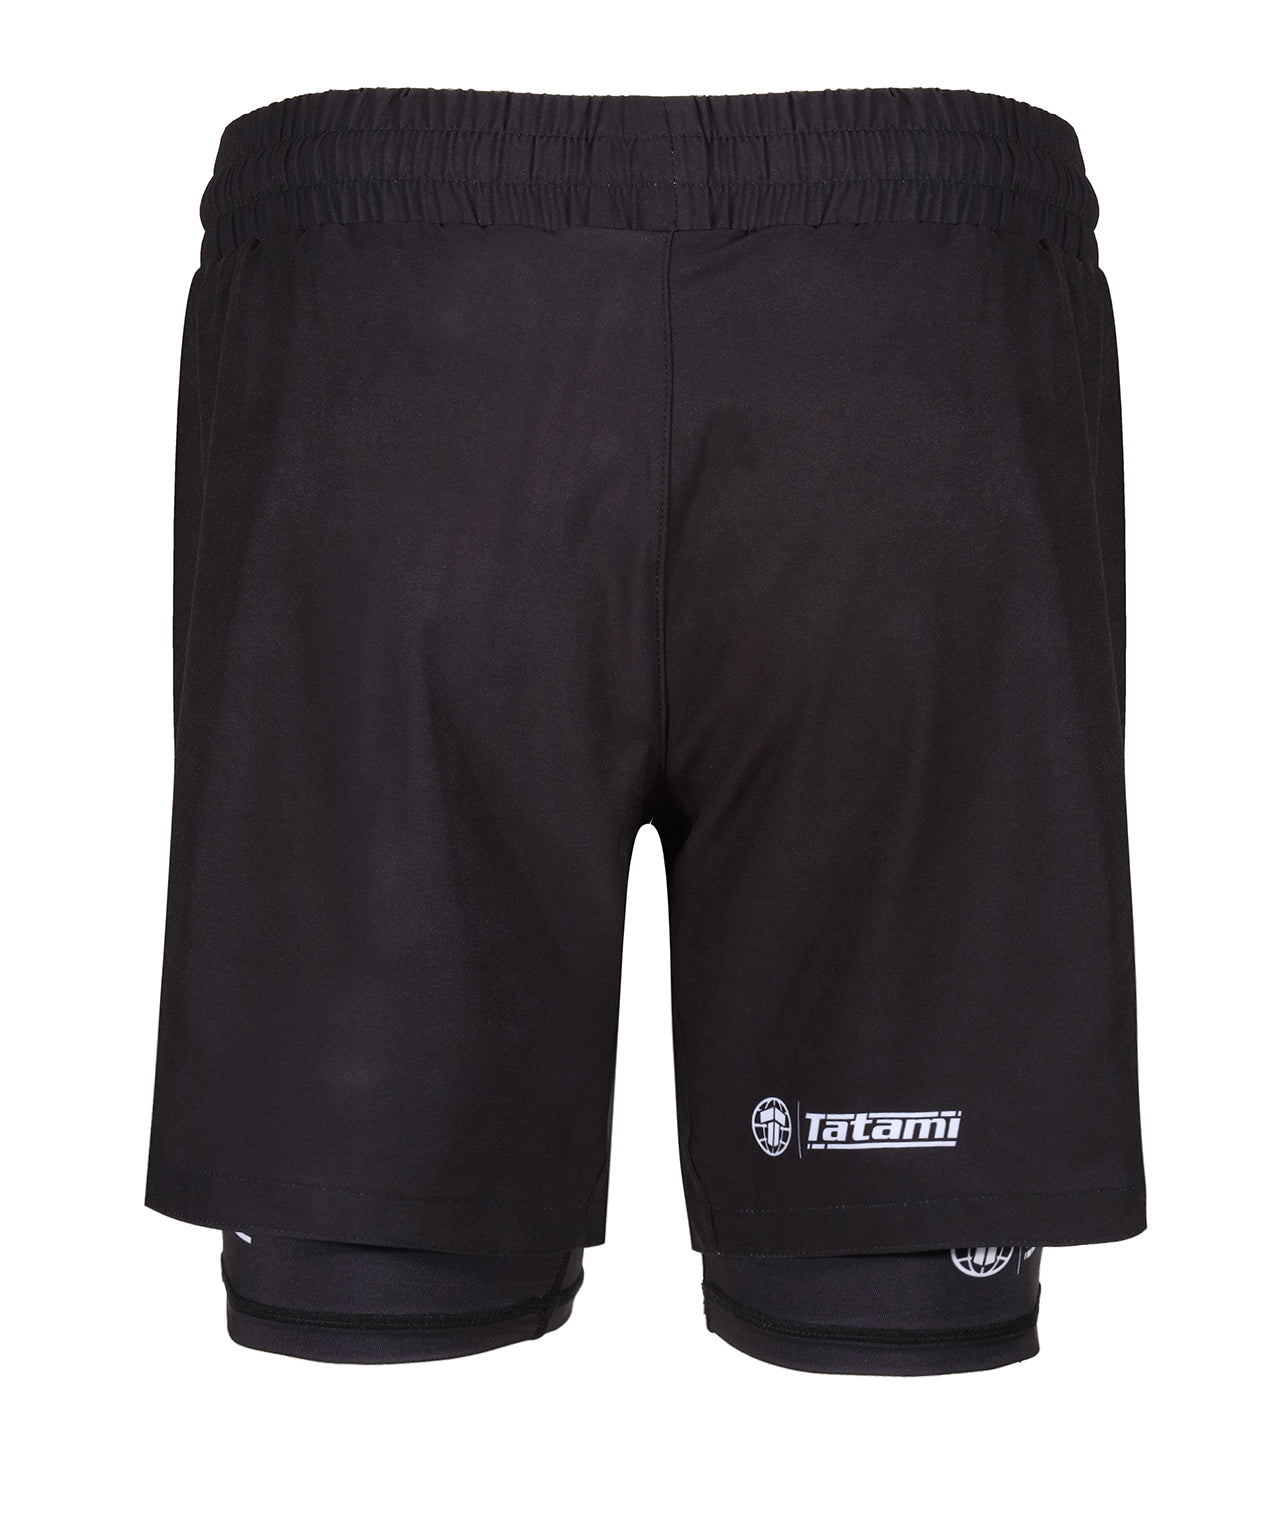 TATAMI Dual Layer Grappling Shorts - Black